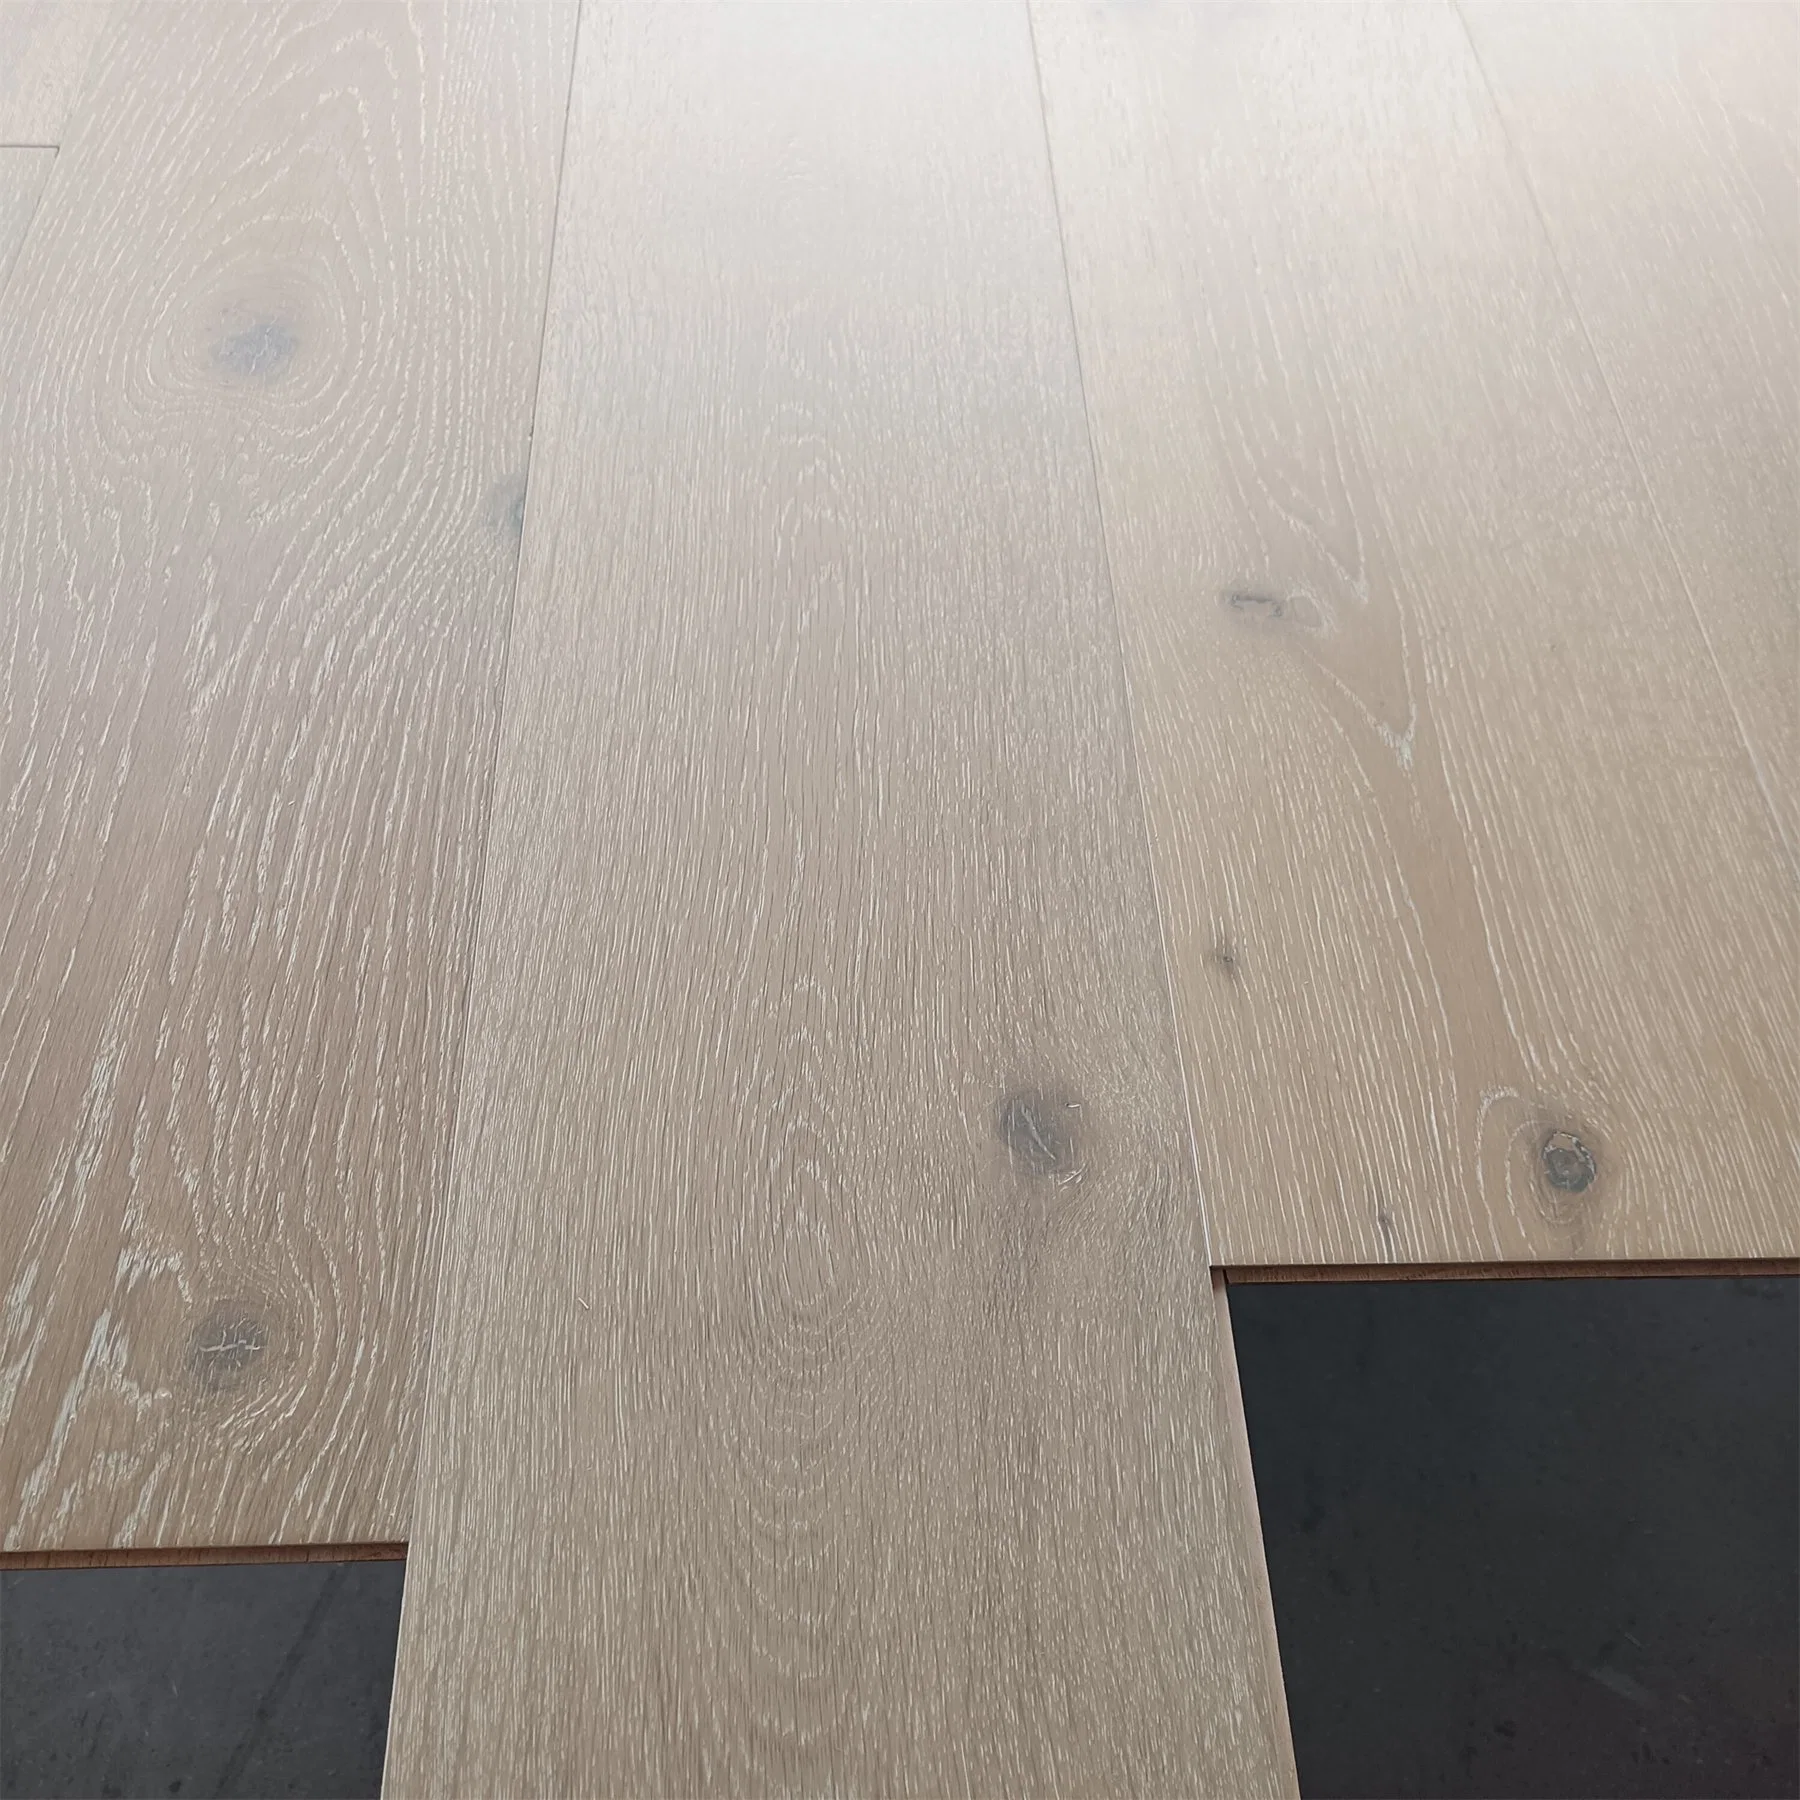 L'intérieur de haute qualité conçu un plancher en bois de chêne Produits de bois pour le pontage